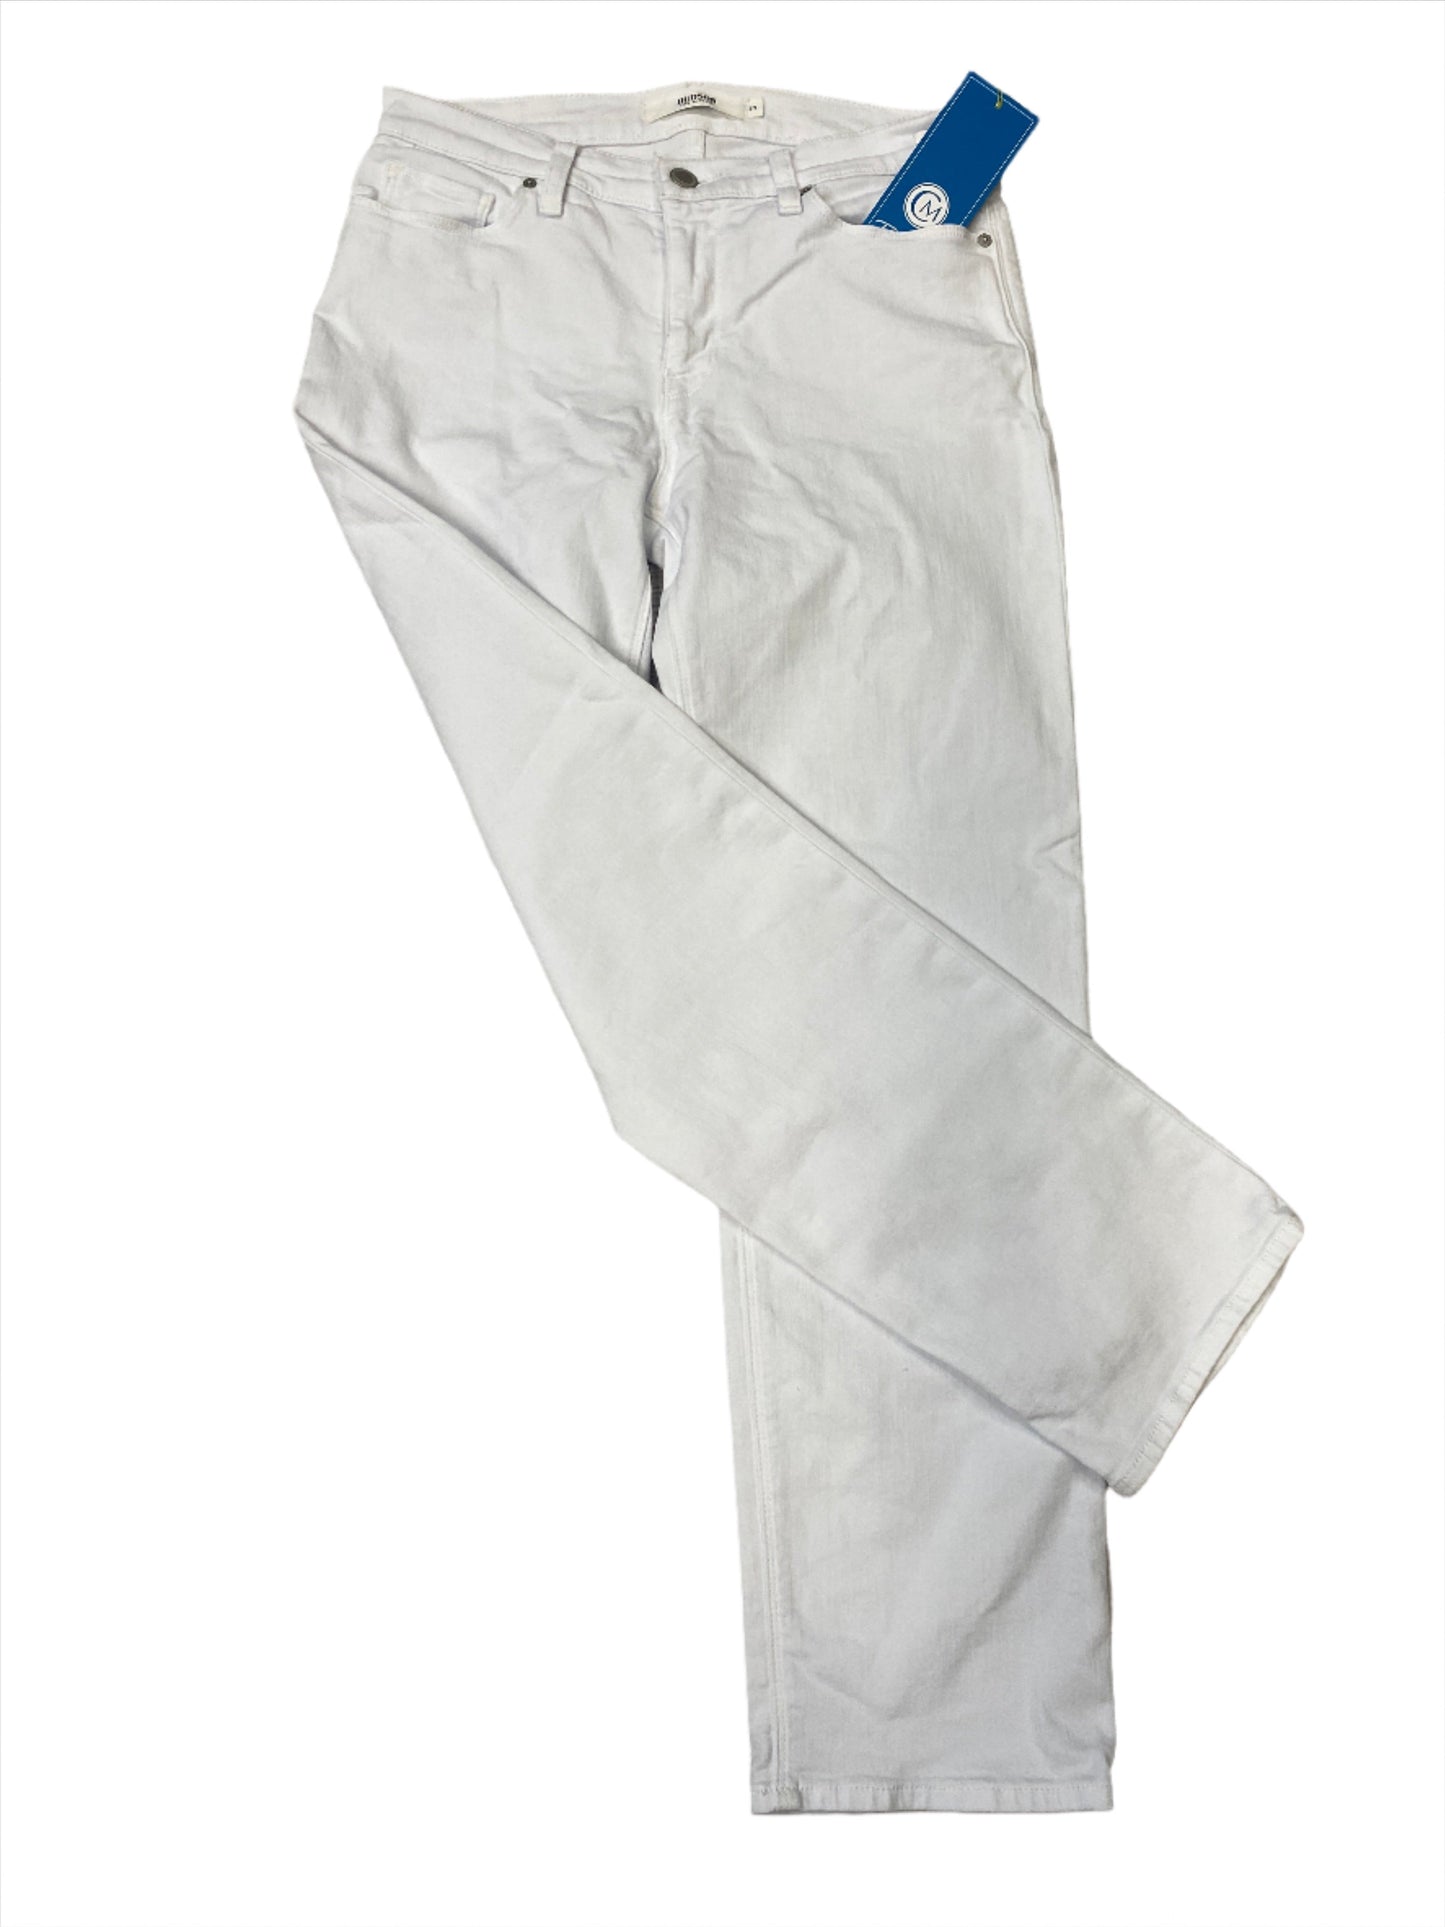 White Jeans Designer Hudson, Size 4